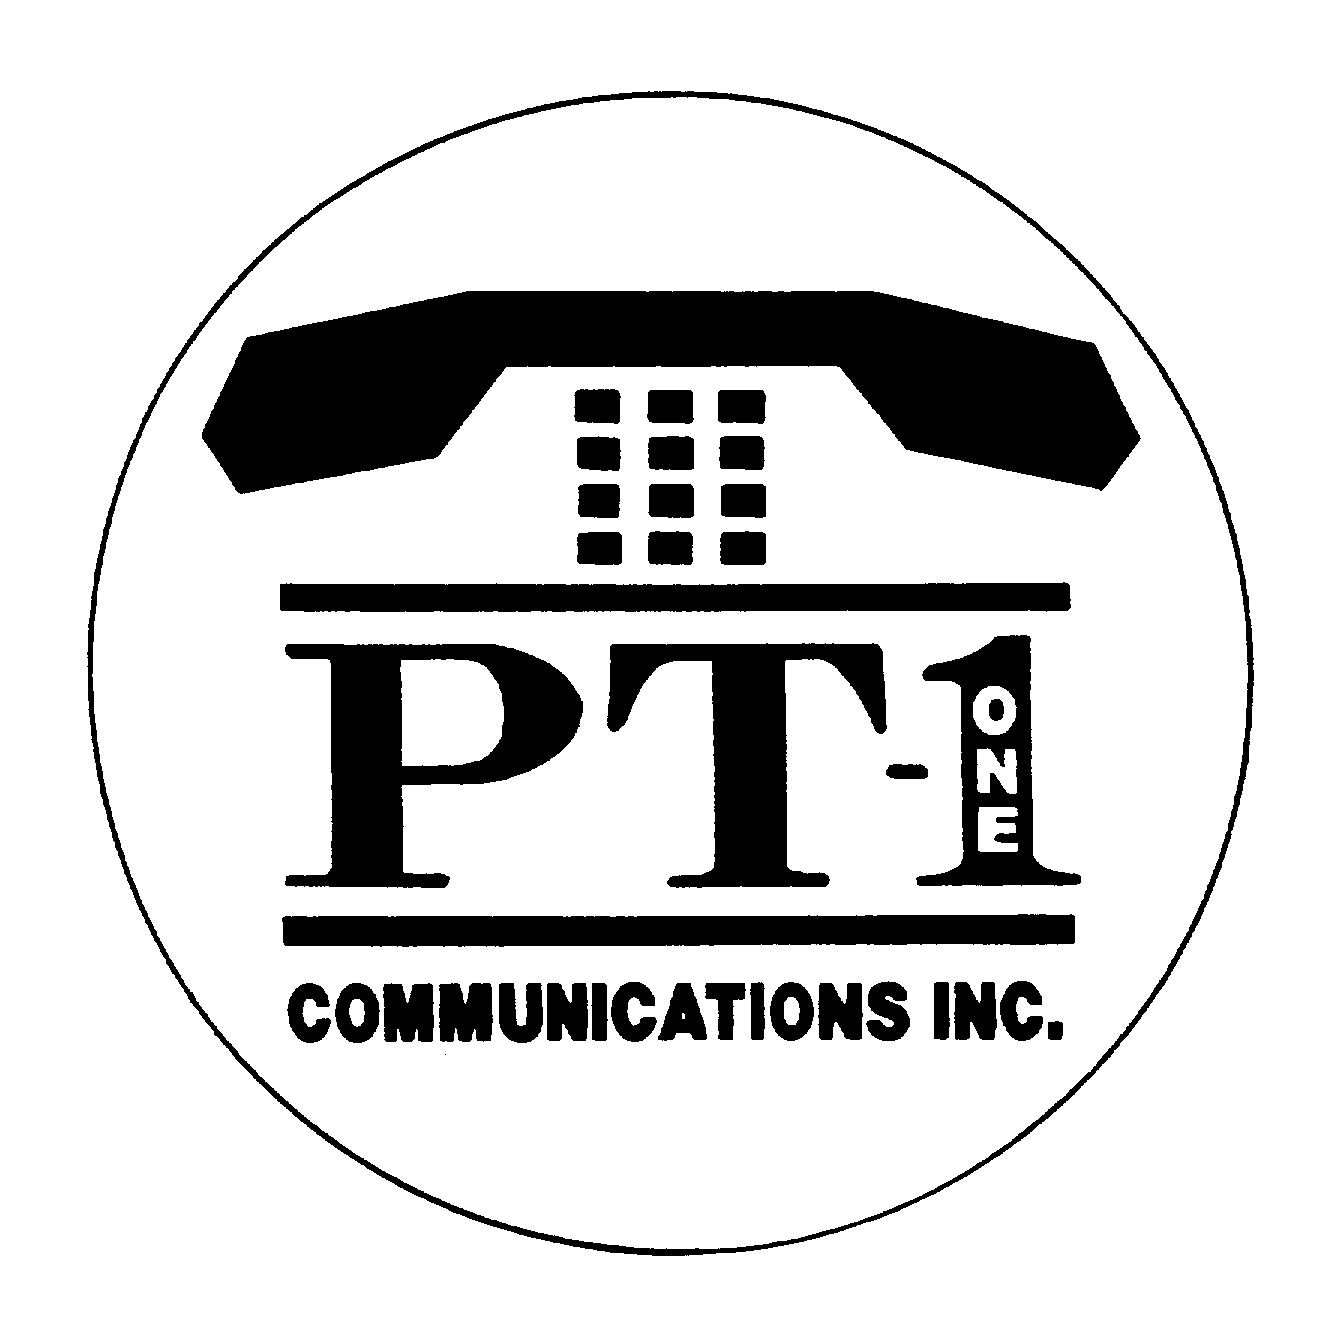  PT-1 ONE COMMUNICATIONS INC.